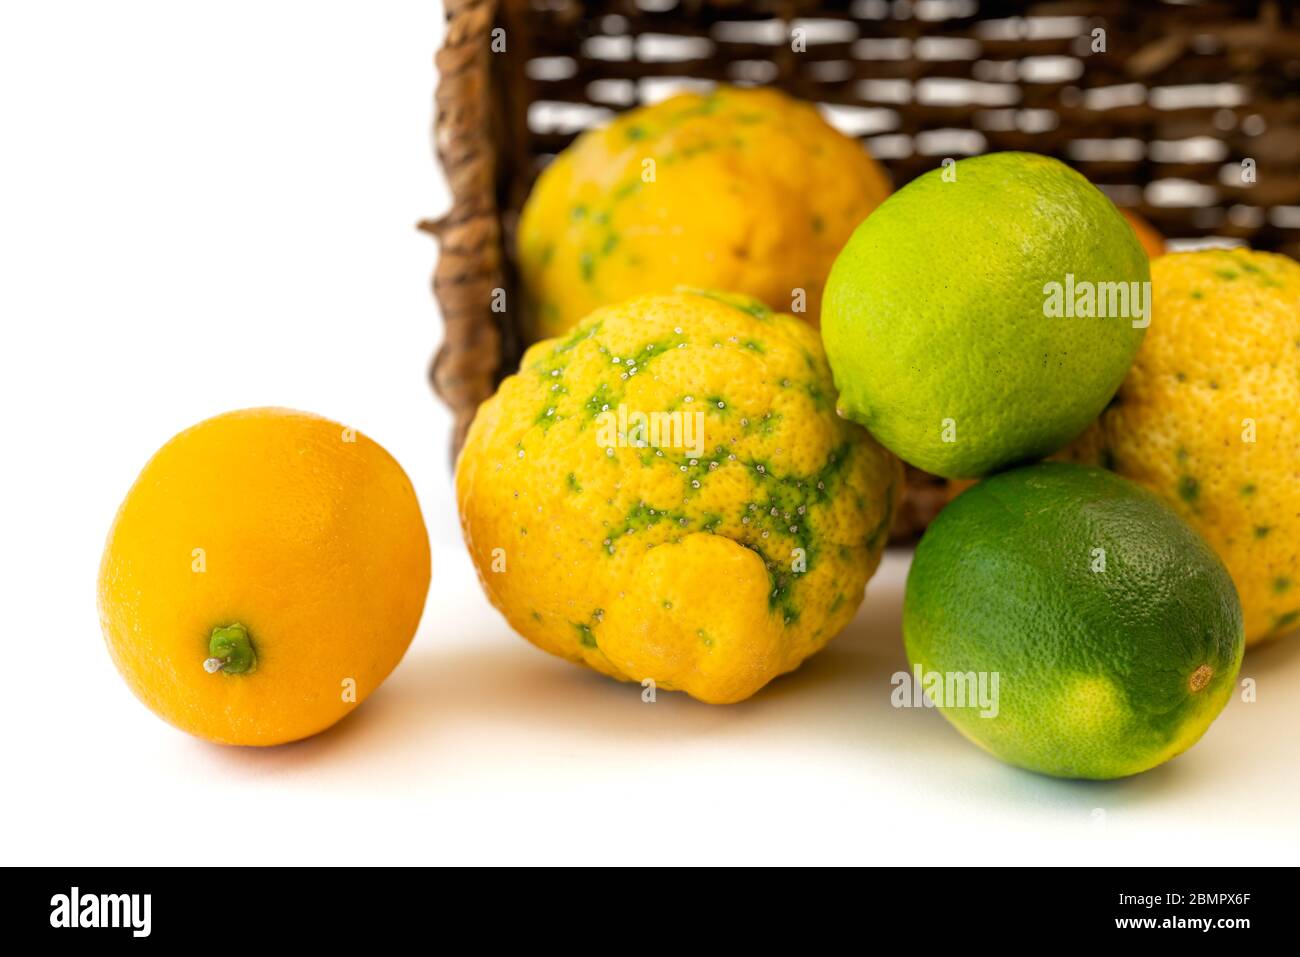 Lemon, lime, Bush lemon close up. Fresh ripe organic fruits in wicker basket, isolated on white background Stock Photo